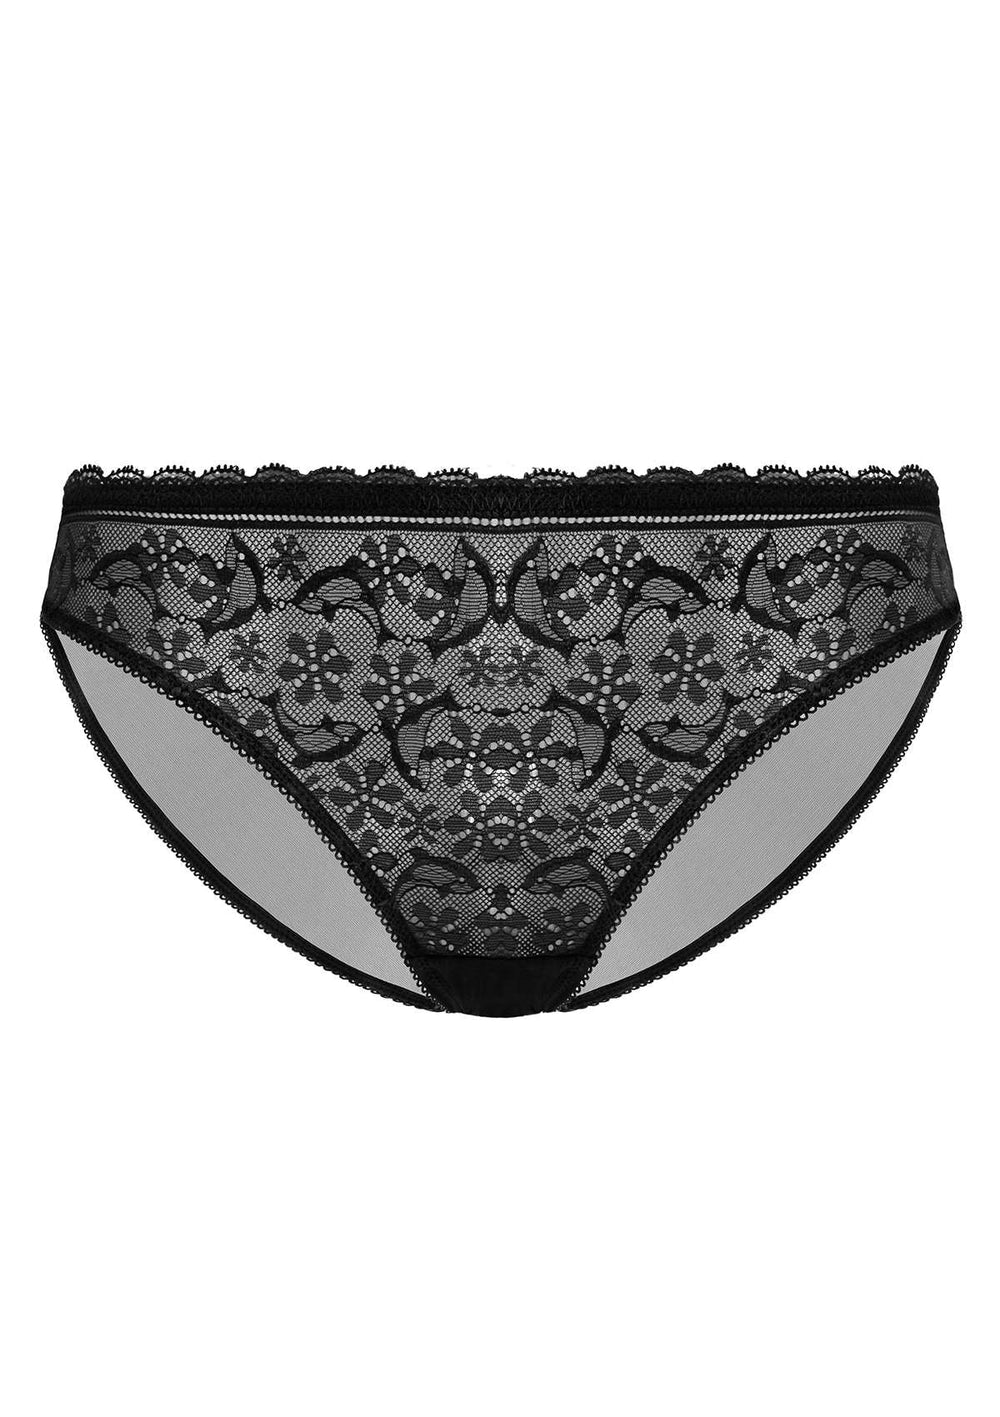 black lace bikini panty